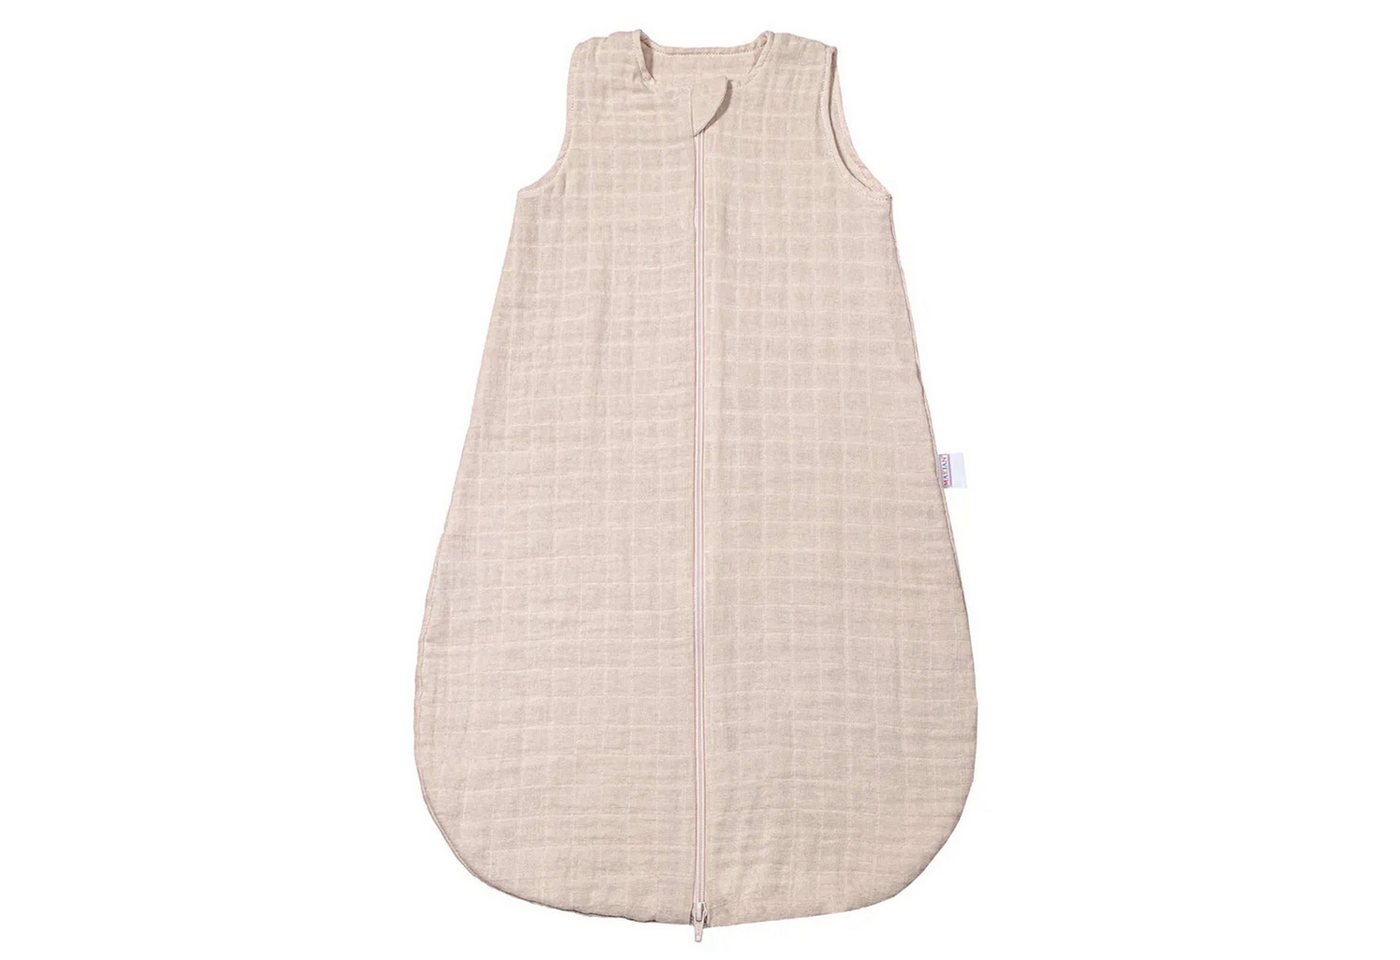 Makian Kinderschlafsack Greige - Gr. 70 cm, Leichter Baby Schlafsack ohne Ärmel für Sommer & Frühling - Baumwolle von Makian